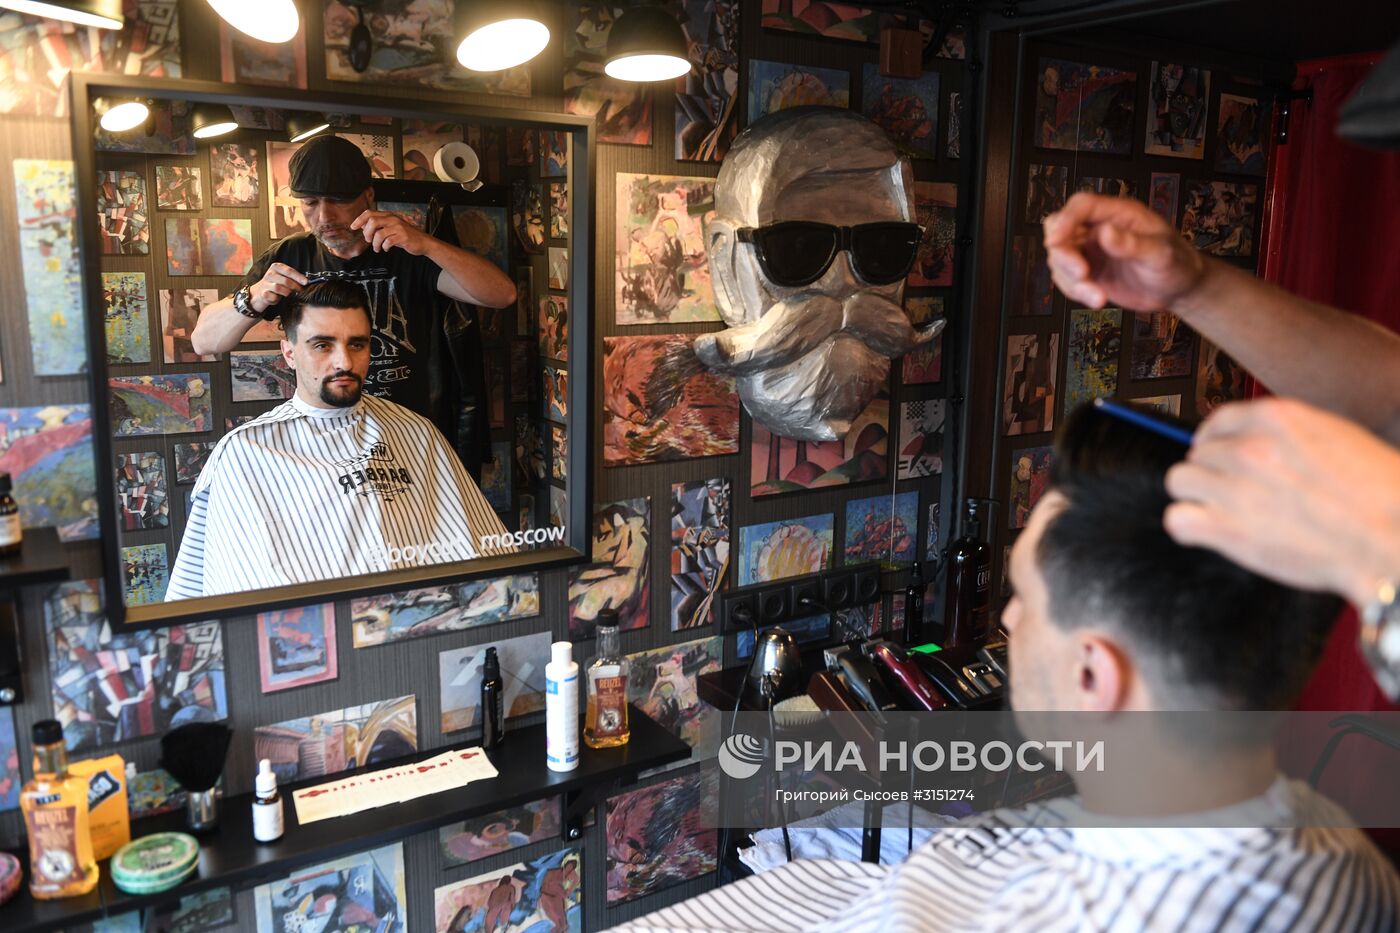 Мобильный барбершоп Boy Cut Barber Truck появился в Москве